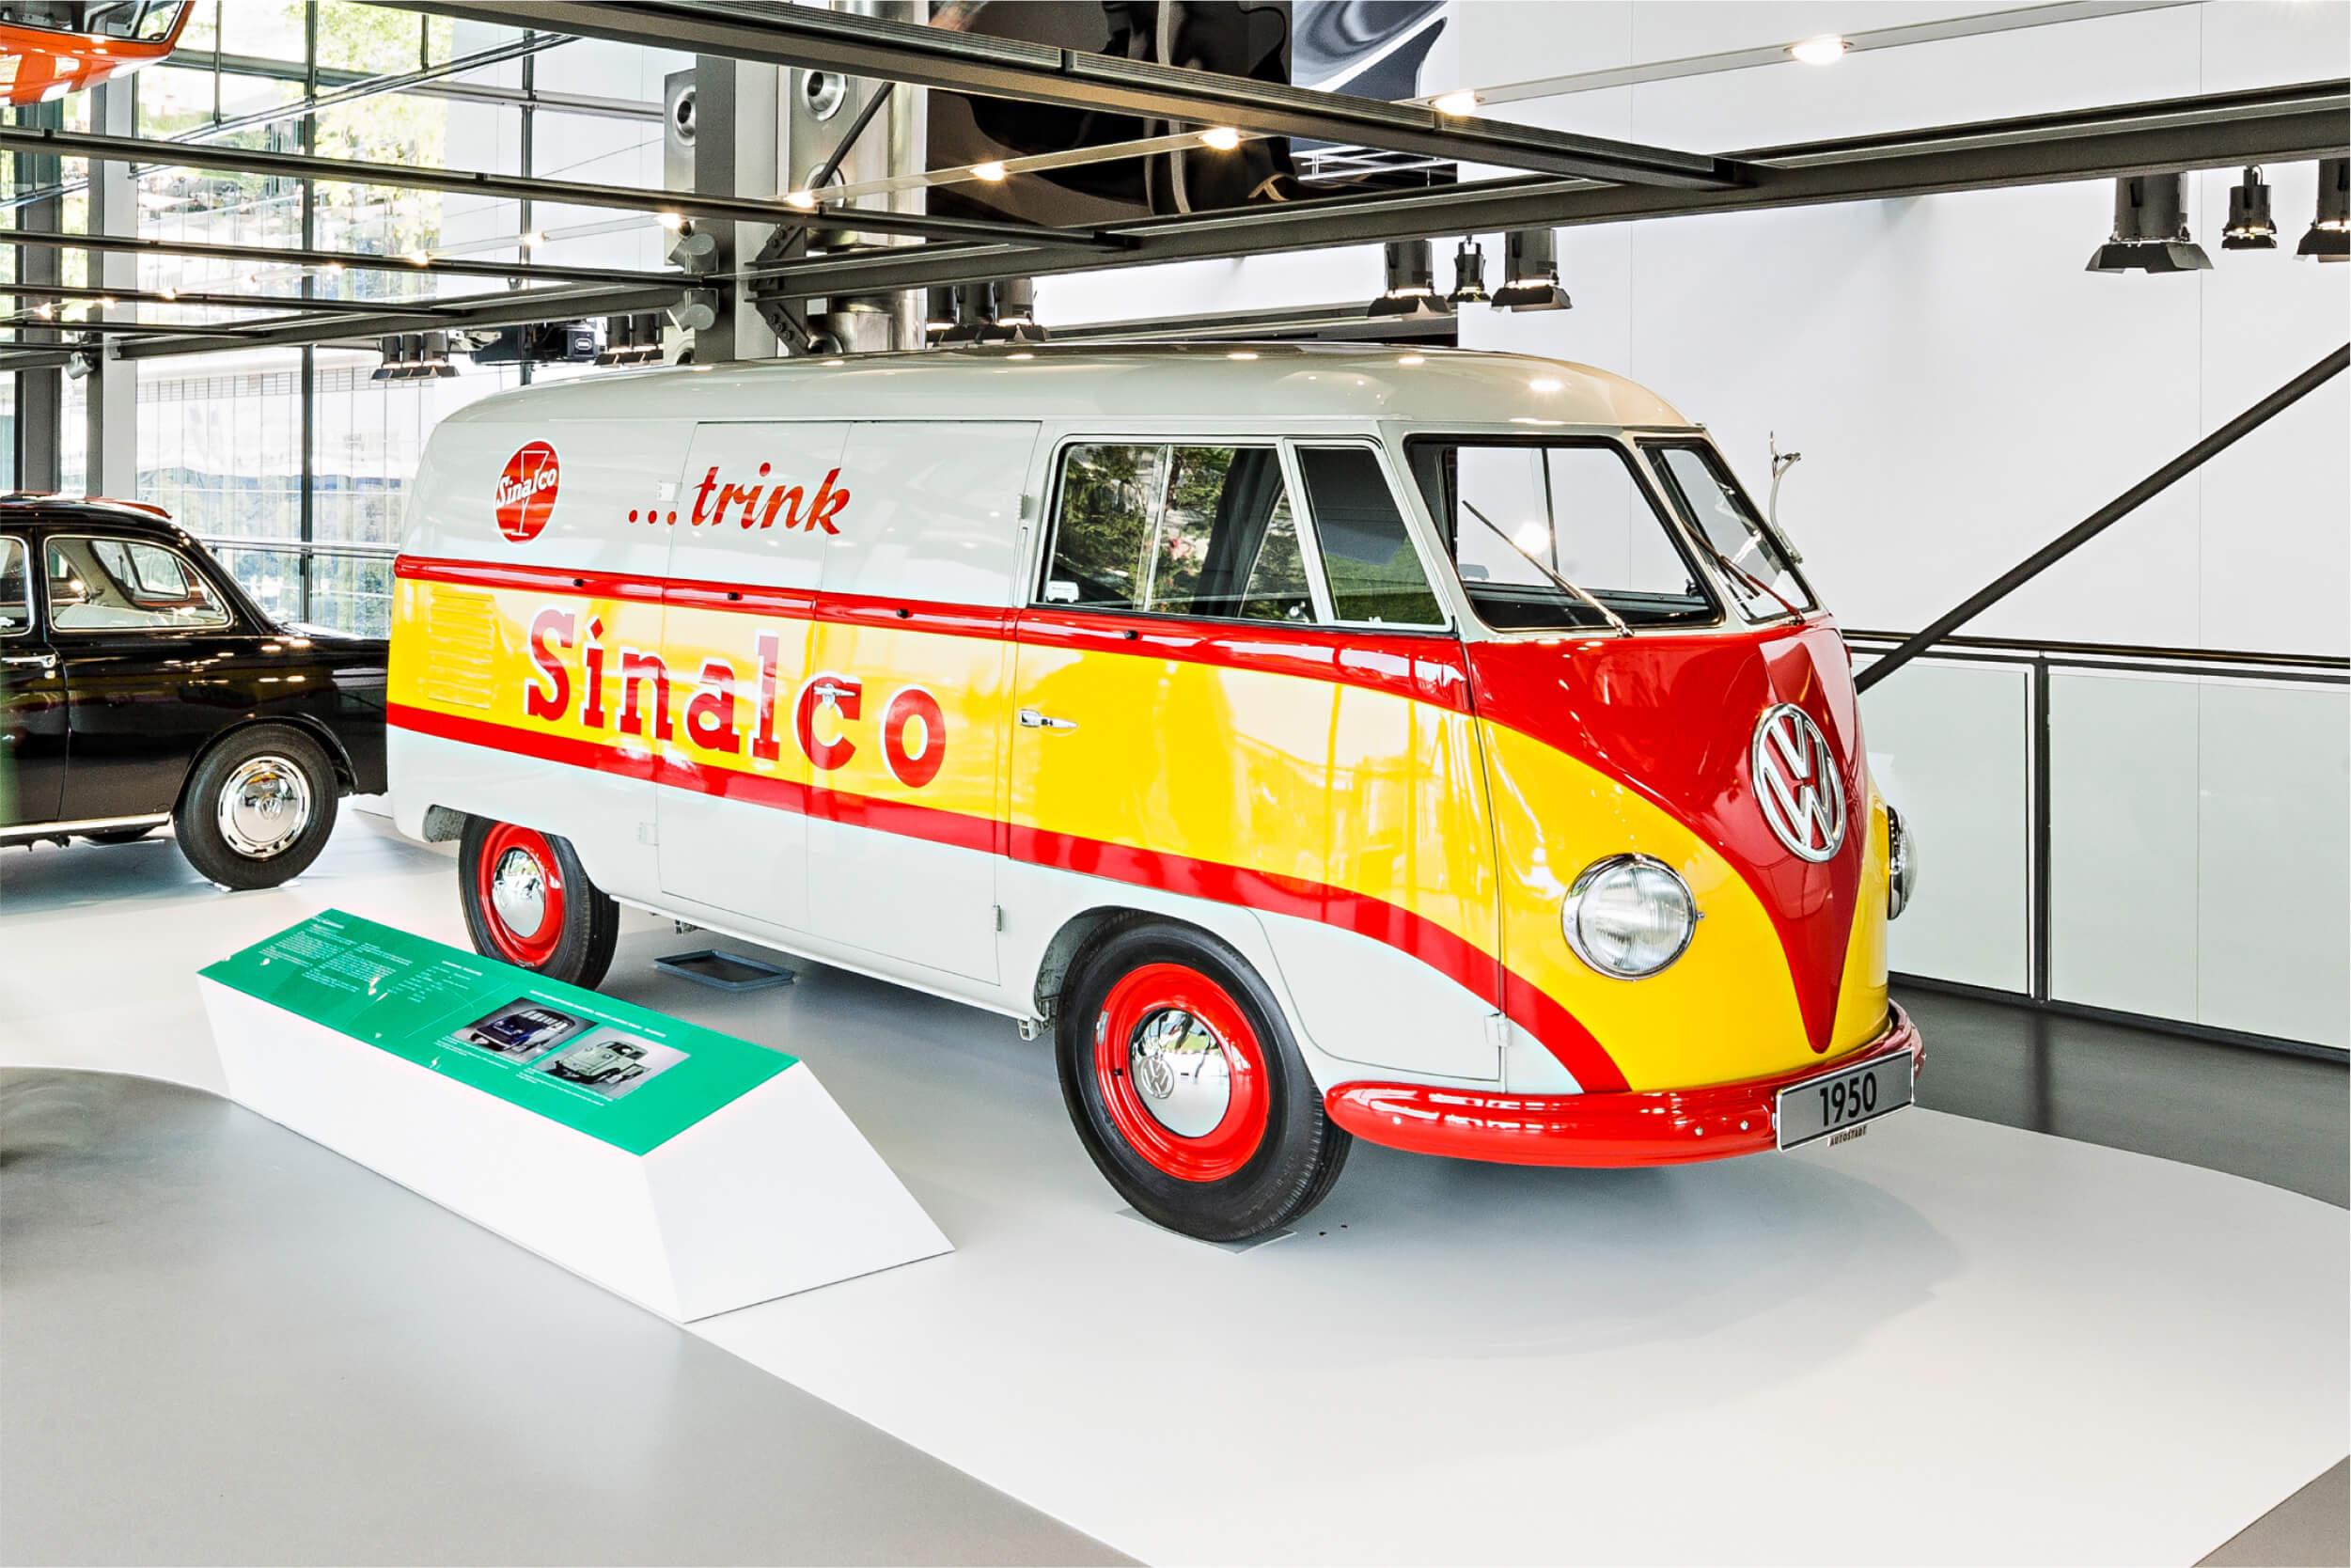 Seitenansicht eines historischen VW-Bulli Modells, der in einem Ausstellungsraum steht. Auf der Seite des Autos ist der Werbeslogen "..trink Sinalco".